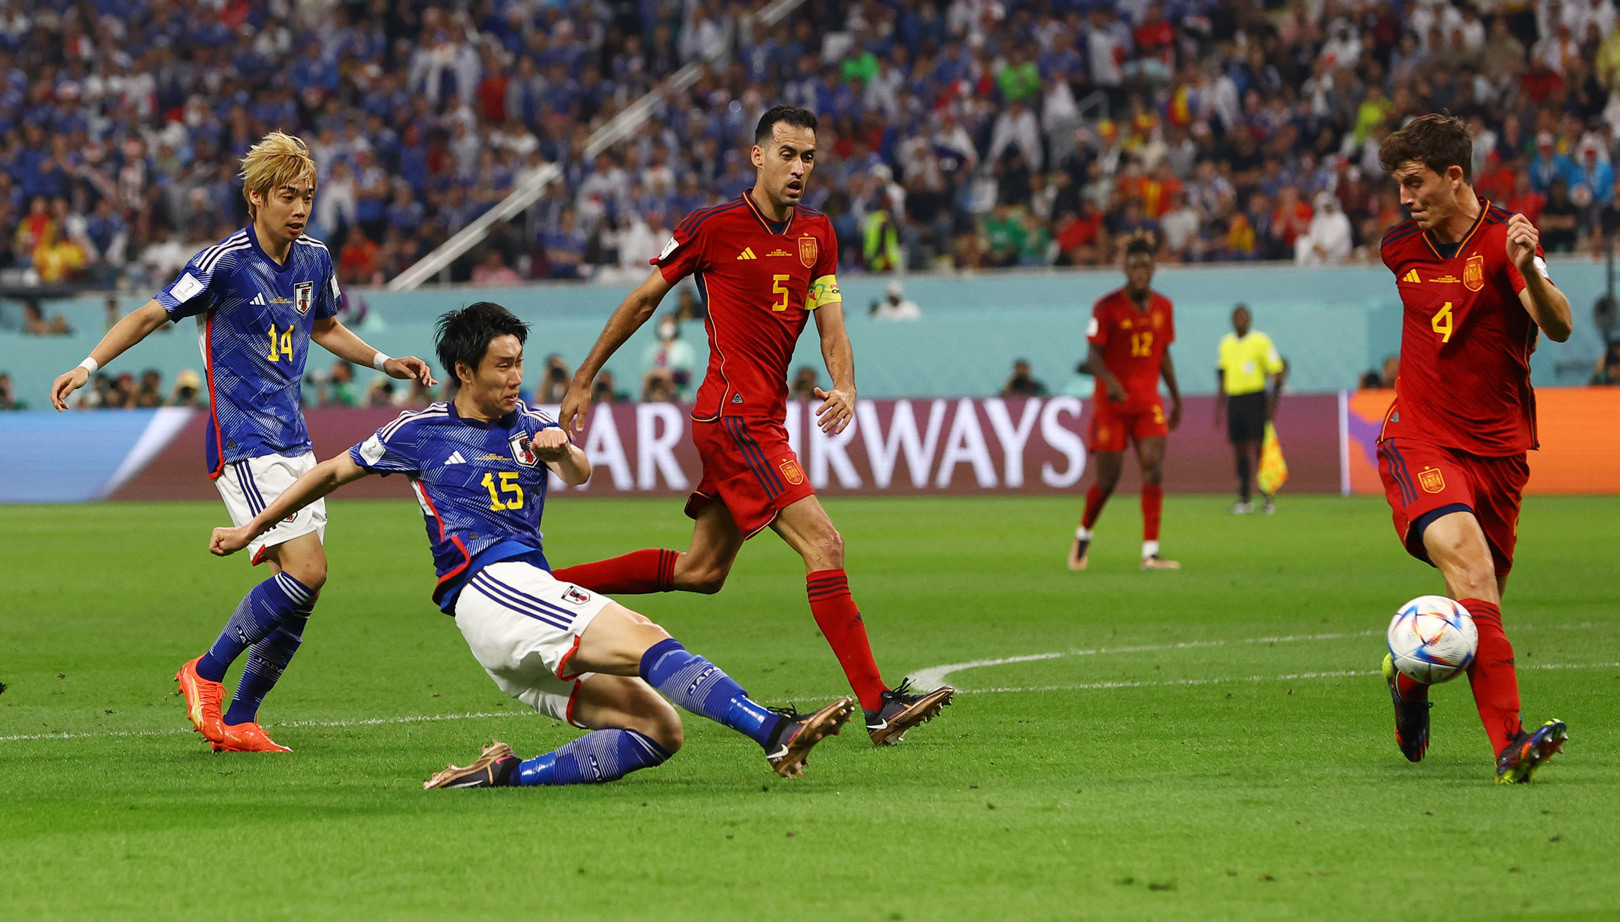 Bàn thắng thứ 2 của Nhật Bản trước Tây Ban Nha gây nhiều tranh cãiBàn thắng thứ 2 của Nhật Bản trước Tây Ban Nha gây nhiều tranh cãi